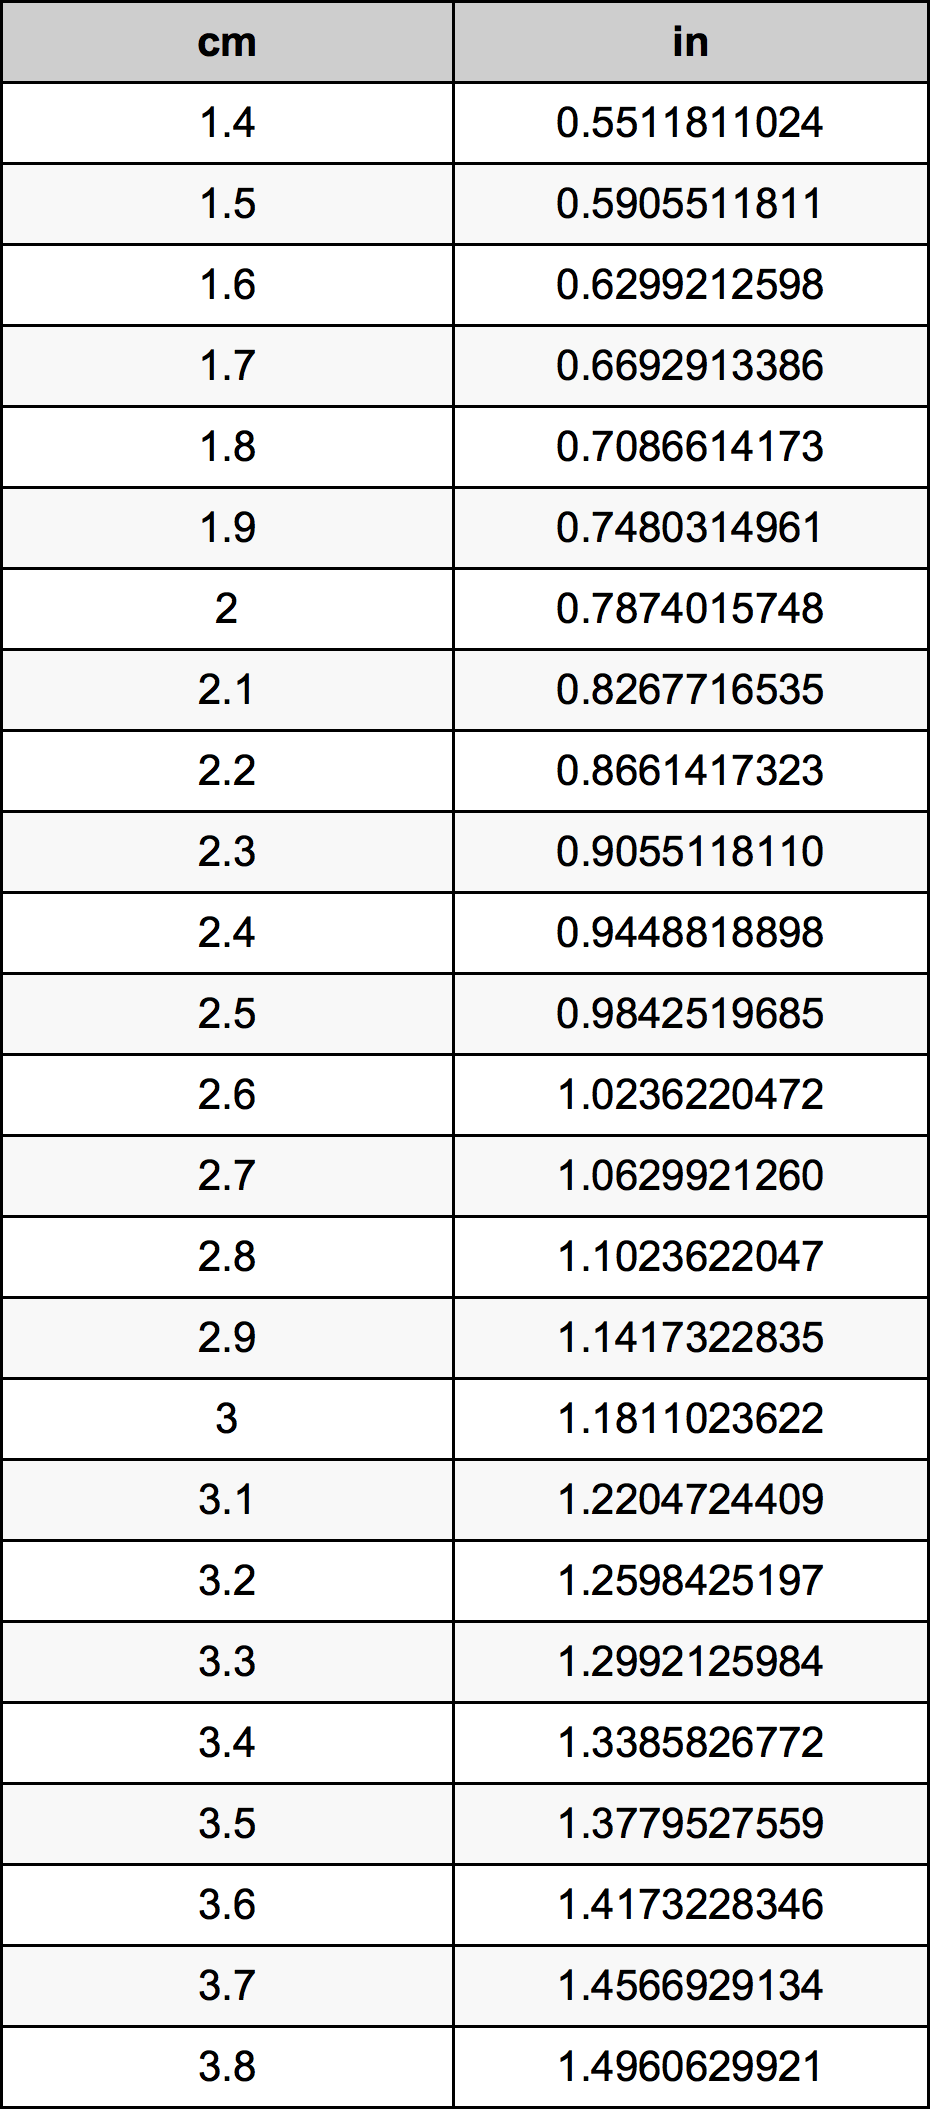 2.6 Centiméter átszámítási táblázat